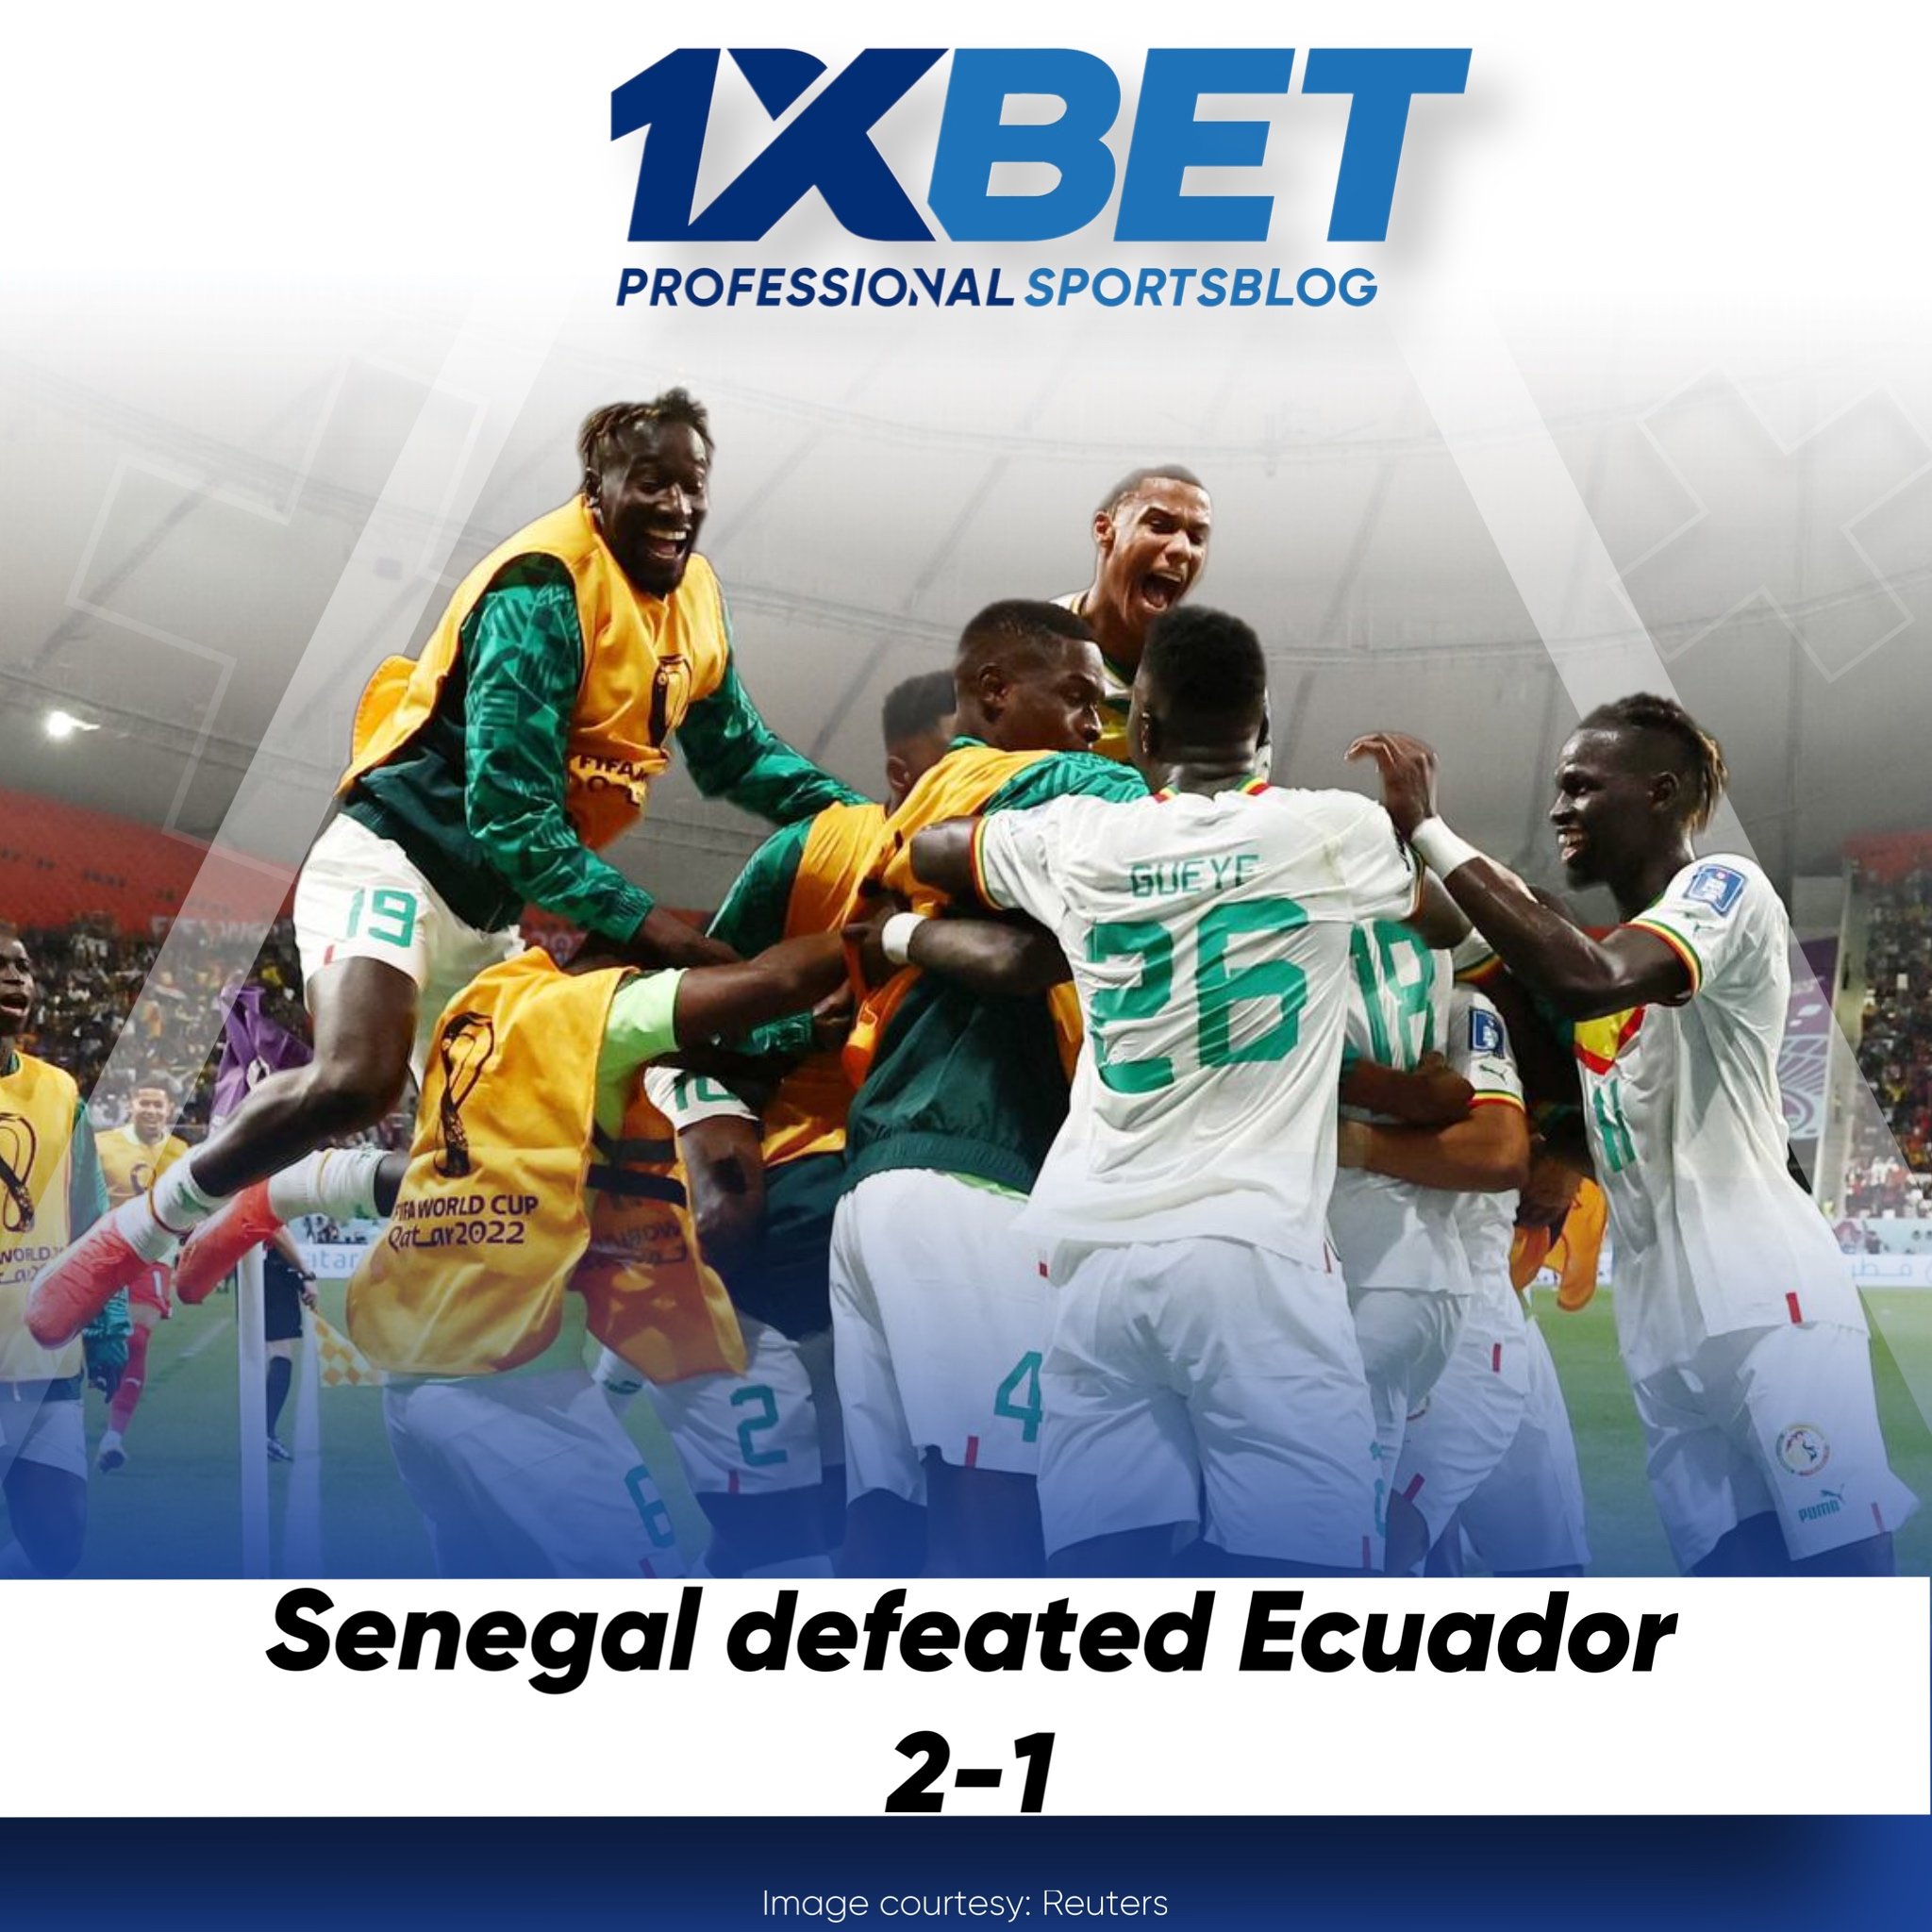 Senegal defeated Ecuador 2-1